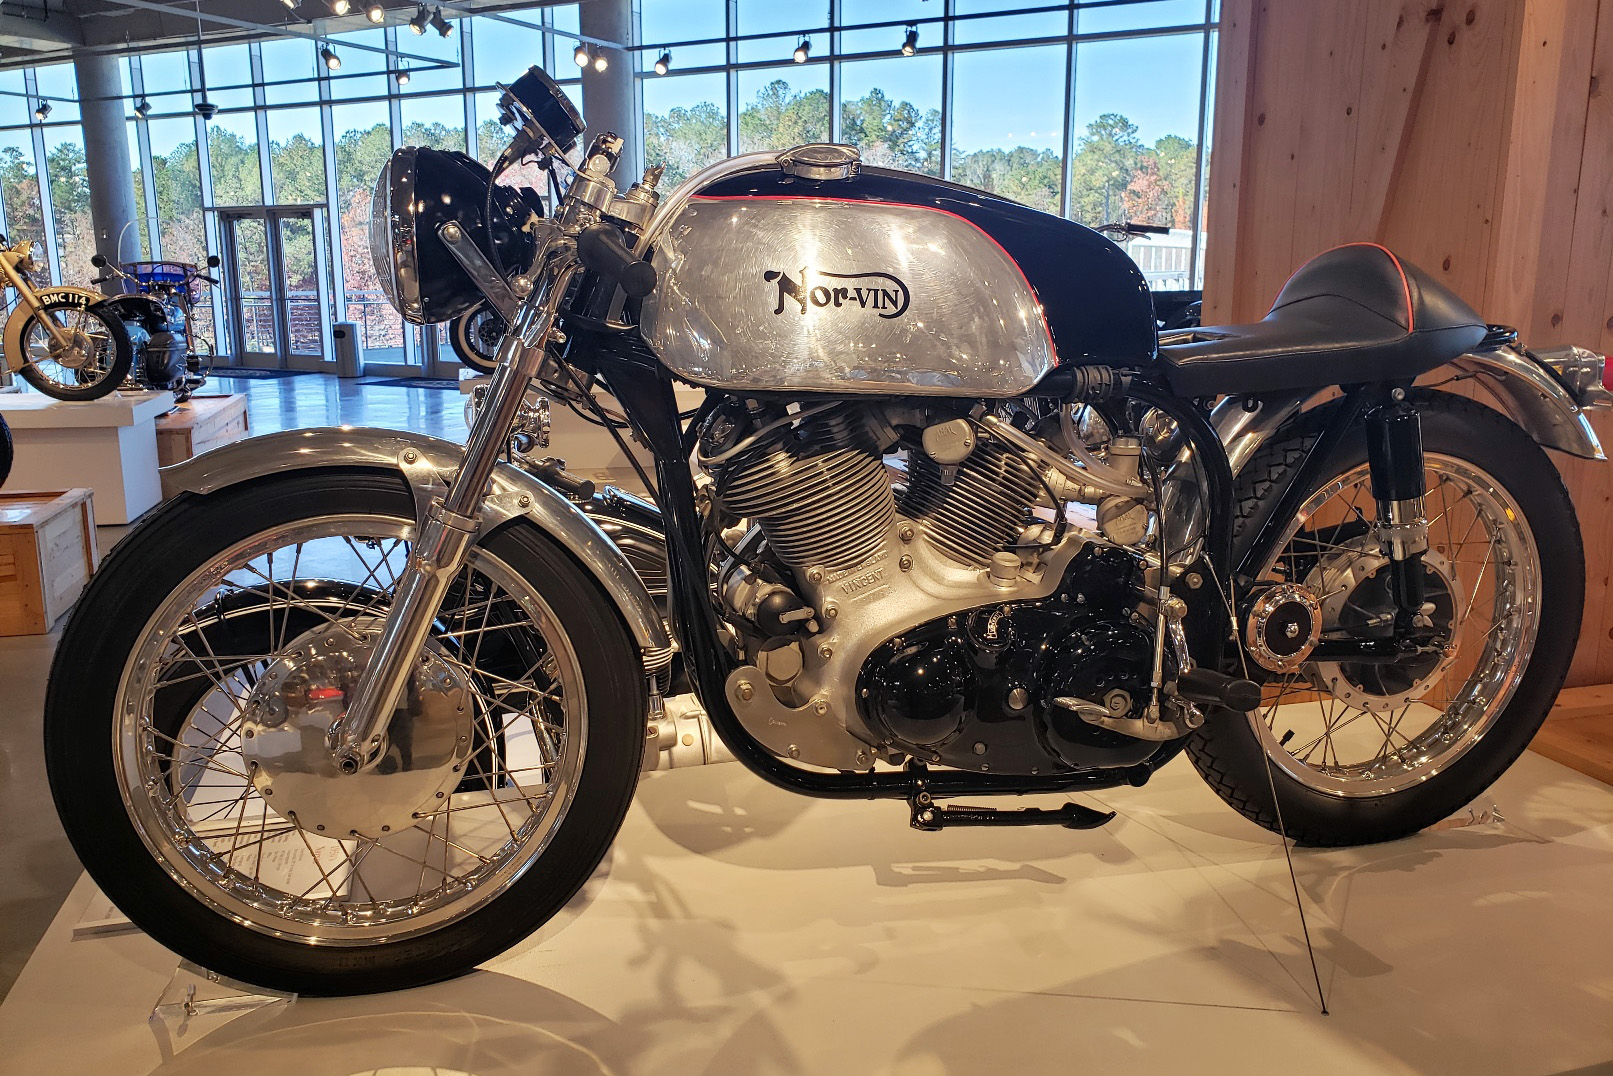 Motocykl Nor Vin eksponowany w muzeum Barber w USA Fot Wojtek Miezal z